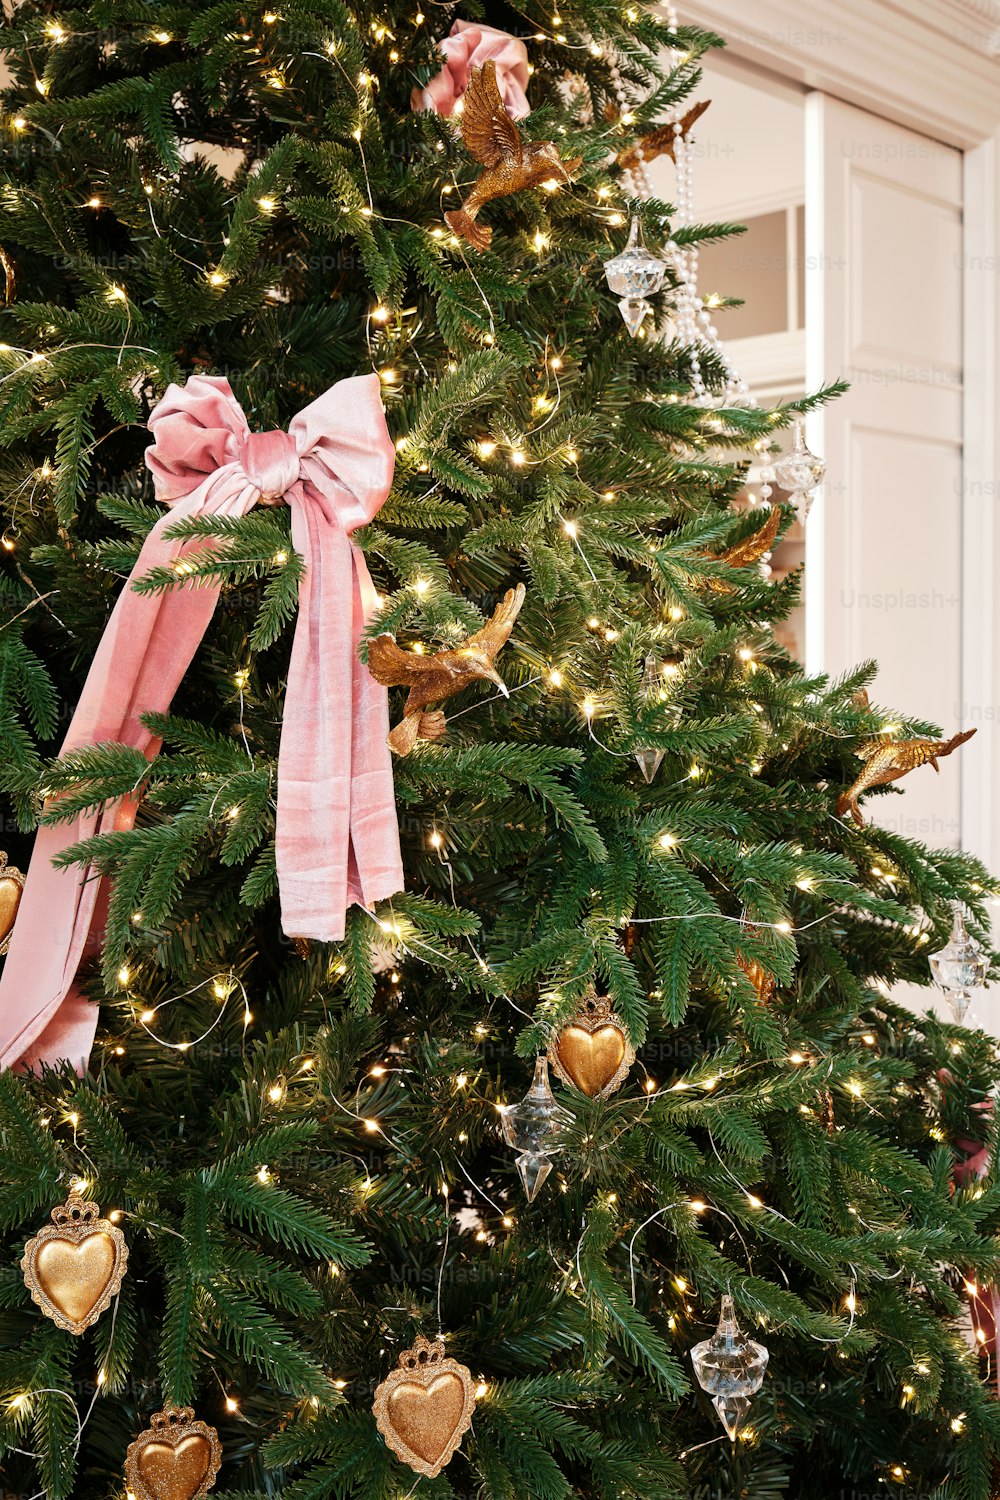 ピンクのリボンで飾られたクリスマスツリー